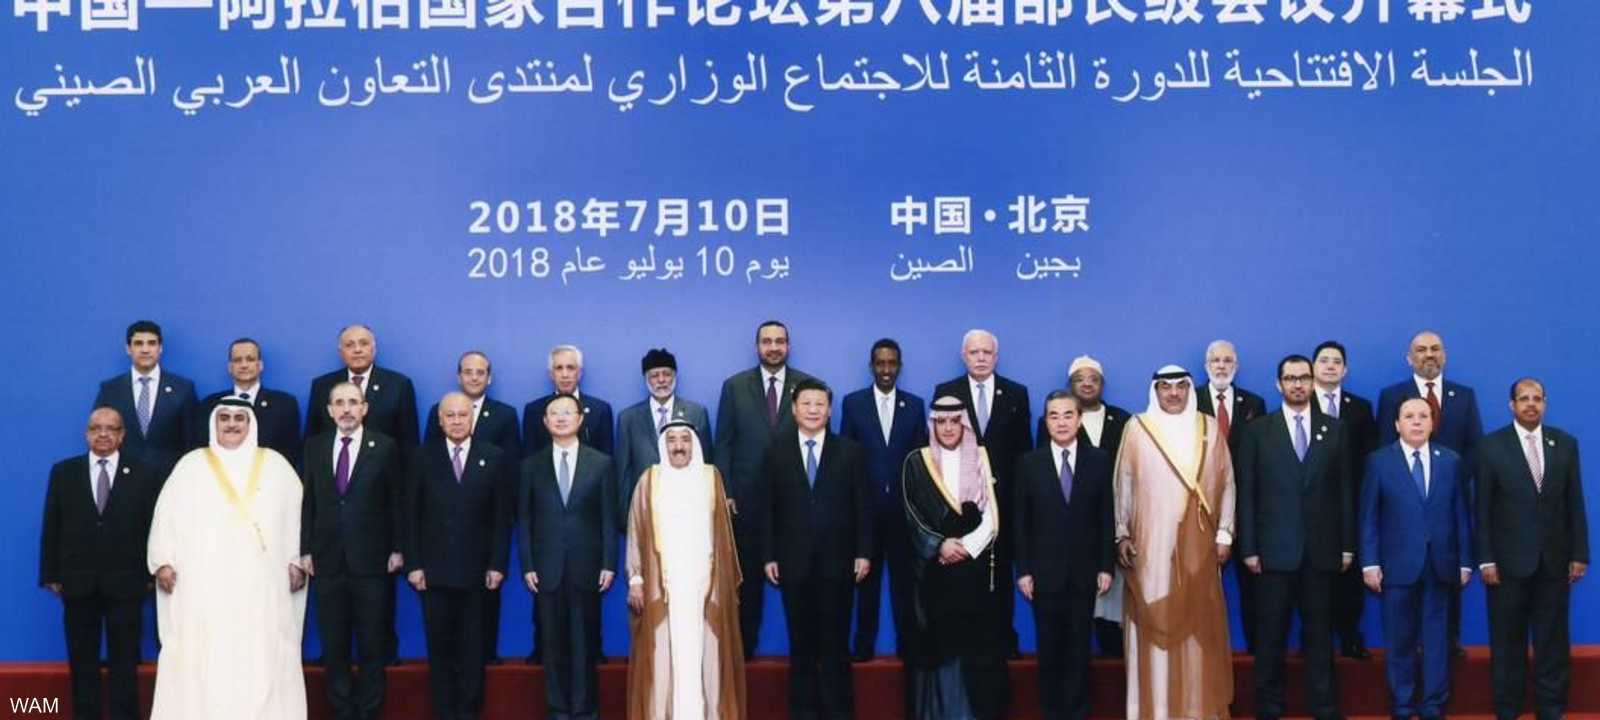 الرئيس شي جين بينغ  يتوسط ممثلي الدول العربية المشاركين